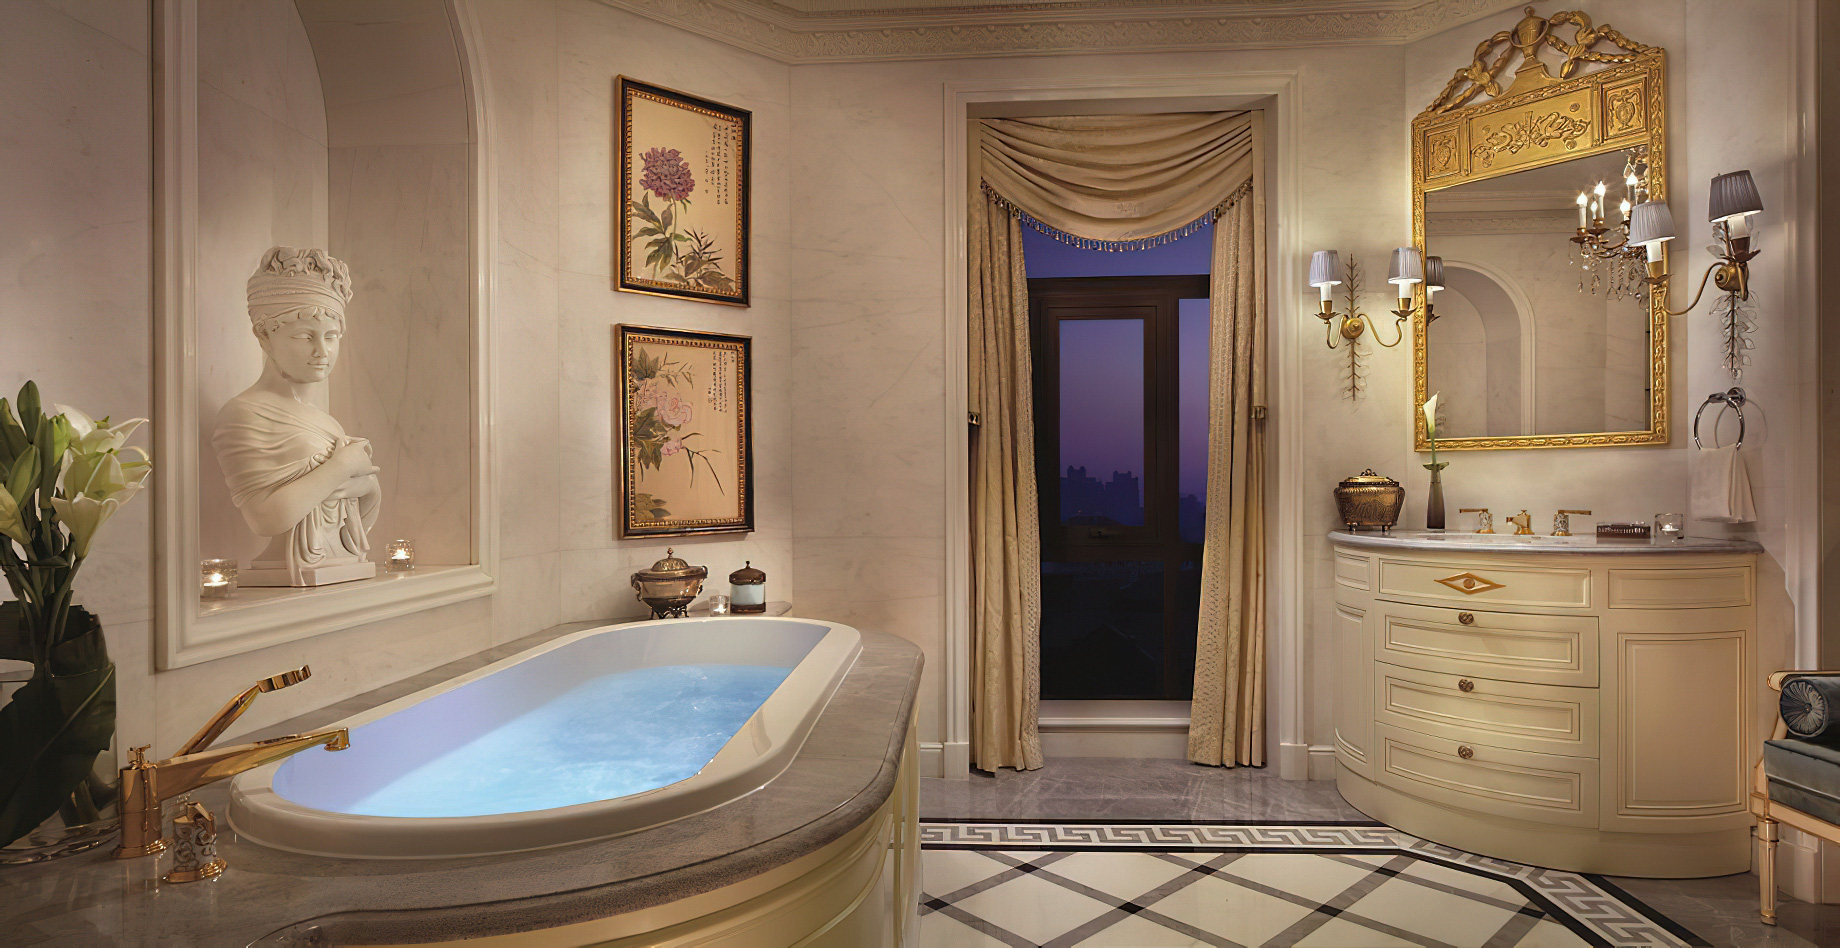 The Ritz-Carlton, Tianjin Hotel – Tianjin, China – The Ritz-Carlton Suite Bathroom